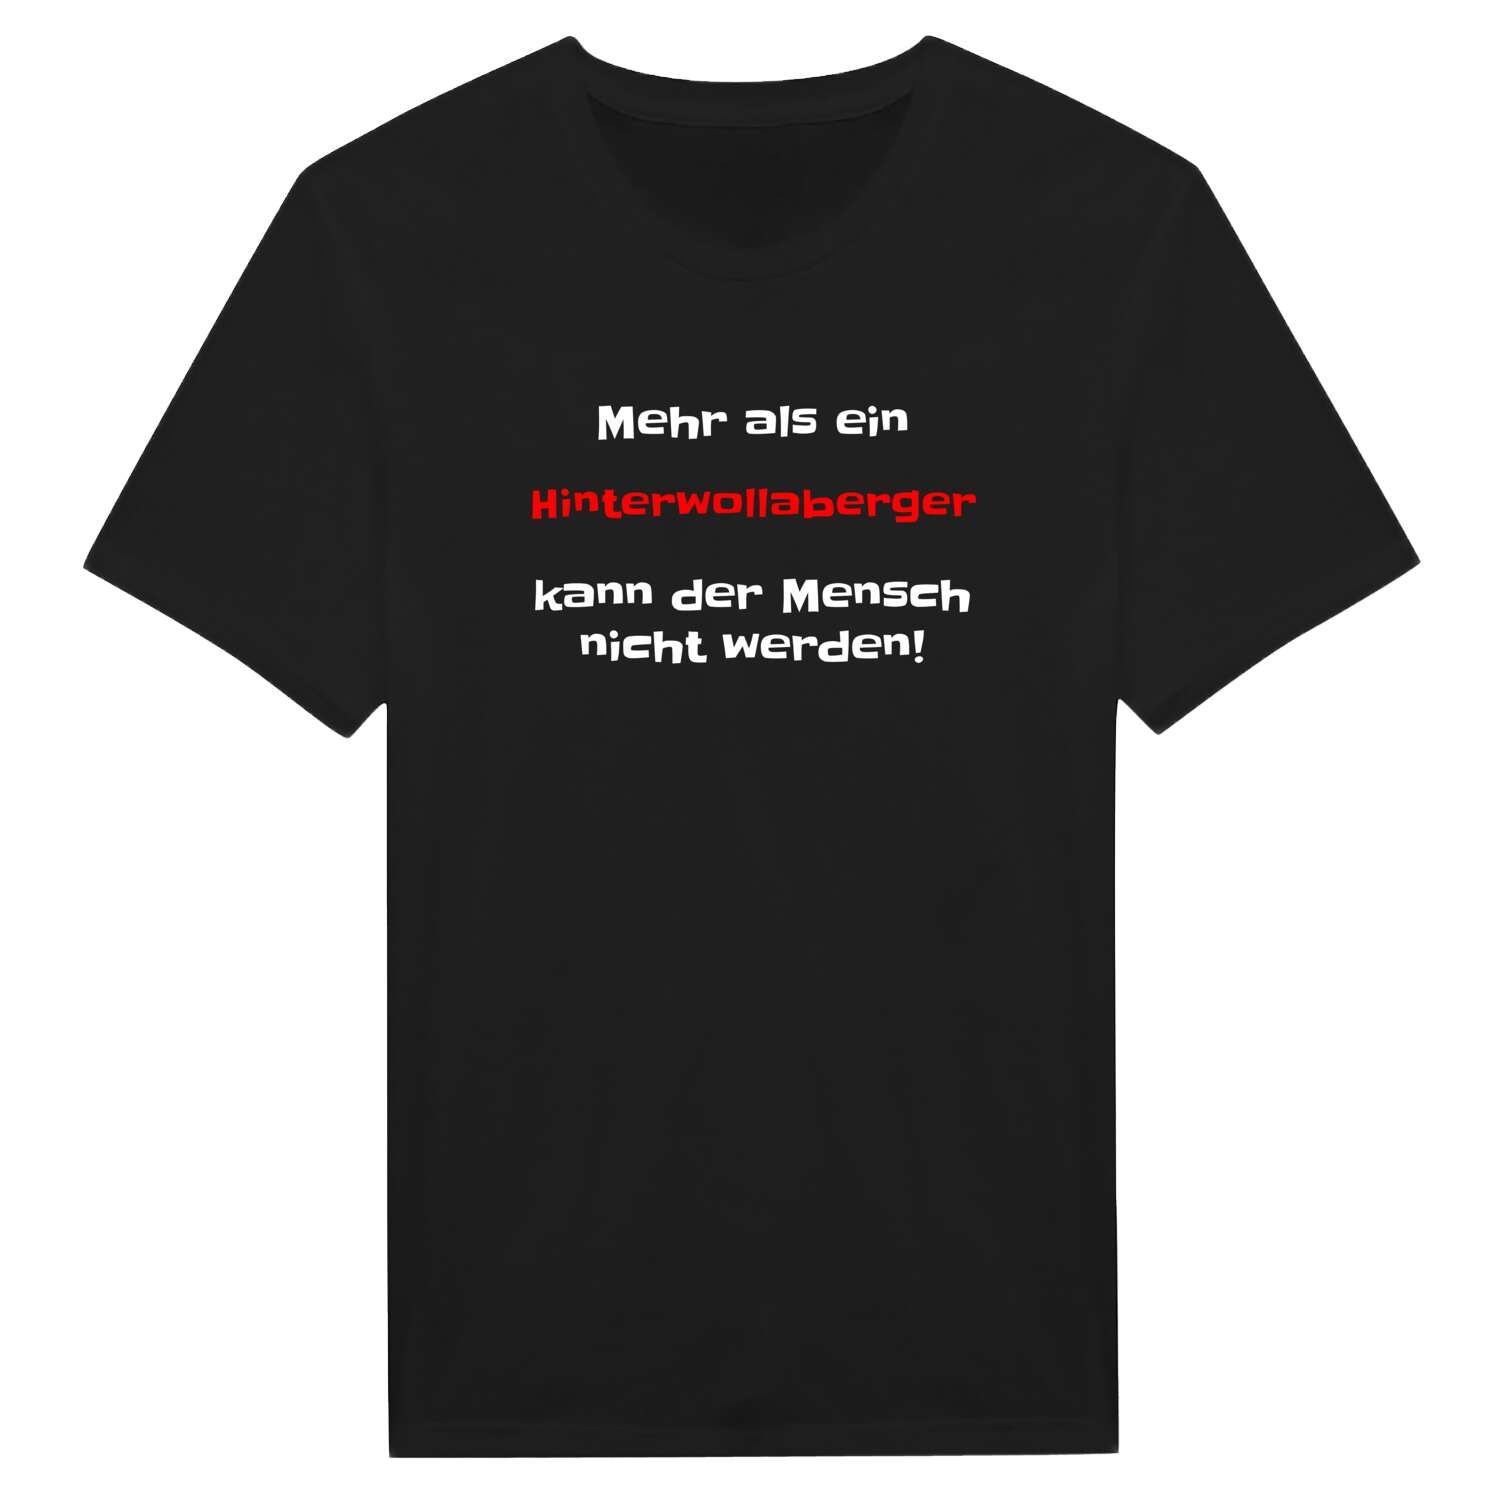 Hinterwollaberg T-Shirt »Mehr als ein«